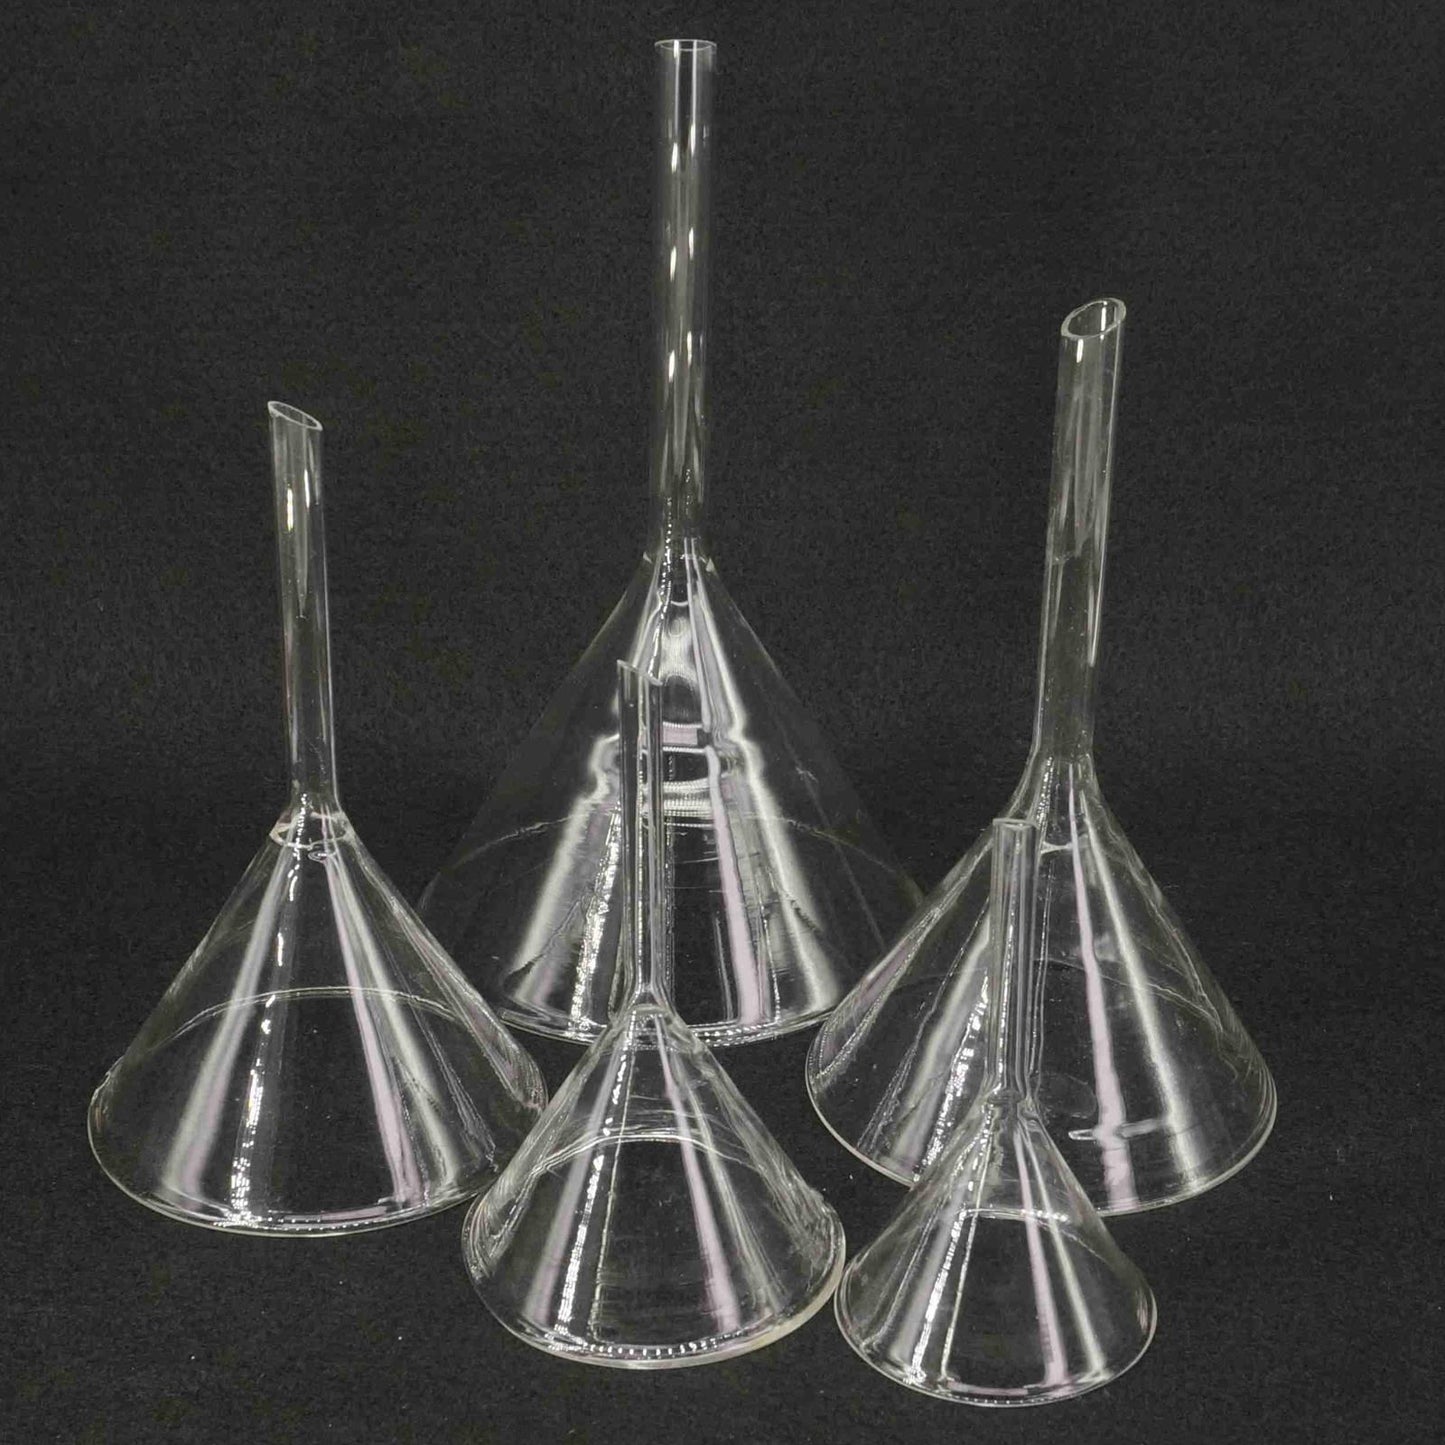 40mm-50mm-60mm-75mm-80mm-90mm-100mm-120mm-lab7th-Miniature-Lab-Glass-Funnel-Borosilicat-Glassware-Triangle-Trichter